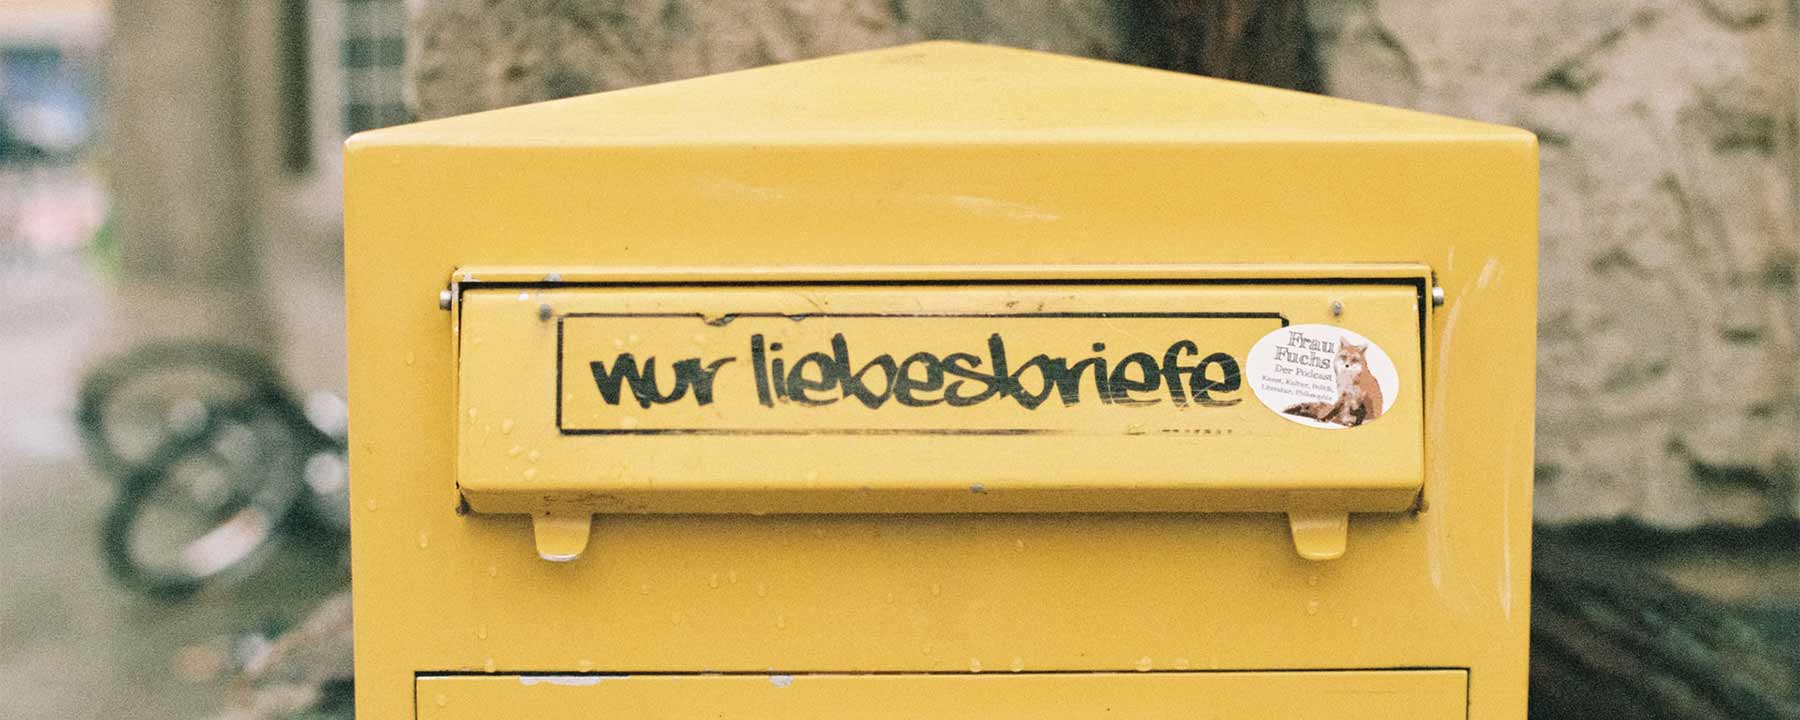 Gelber Briefkasten, darauf steht: "Nur Liebesbriefe"